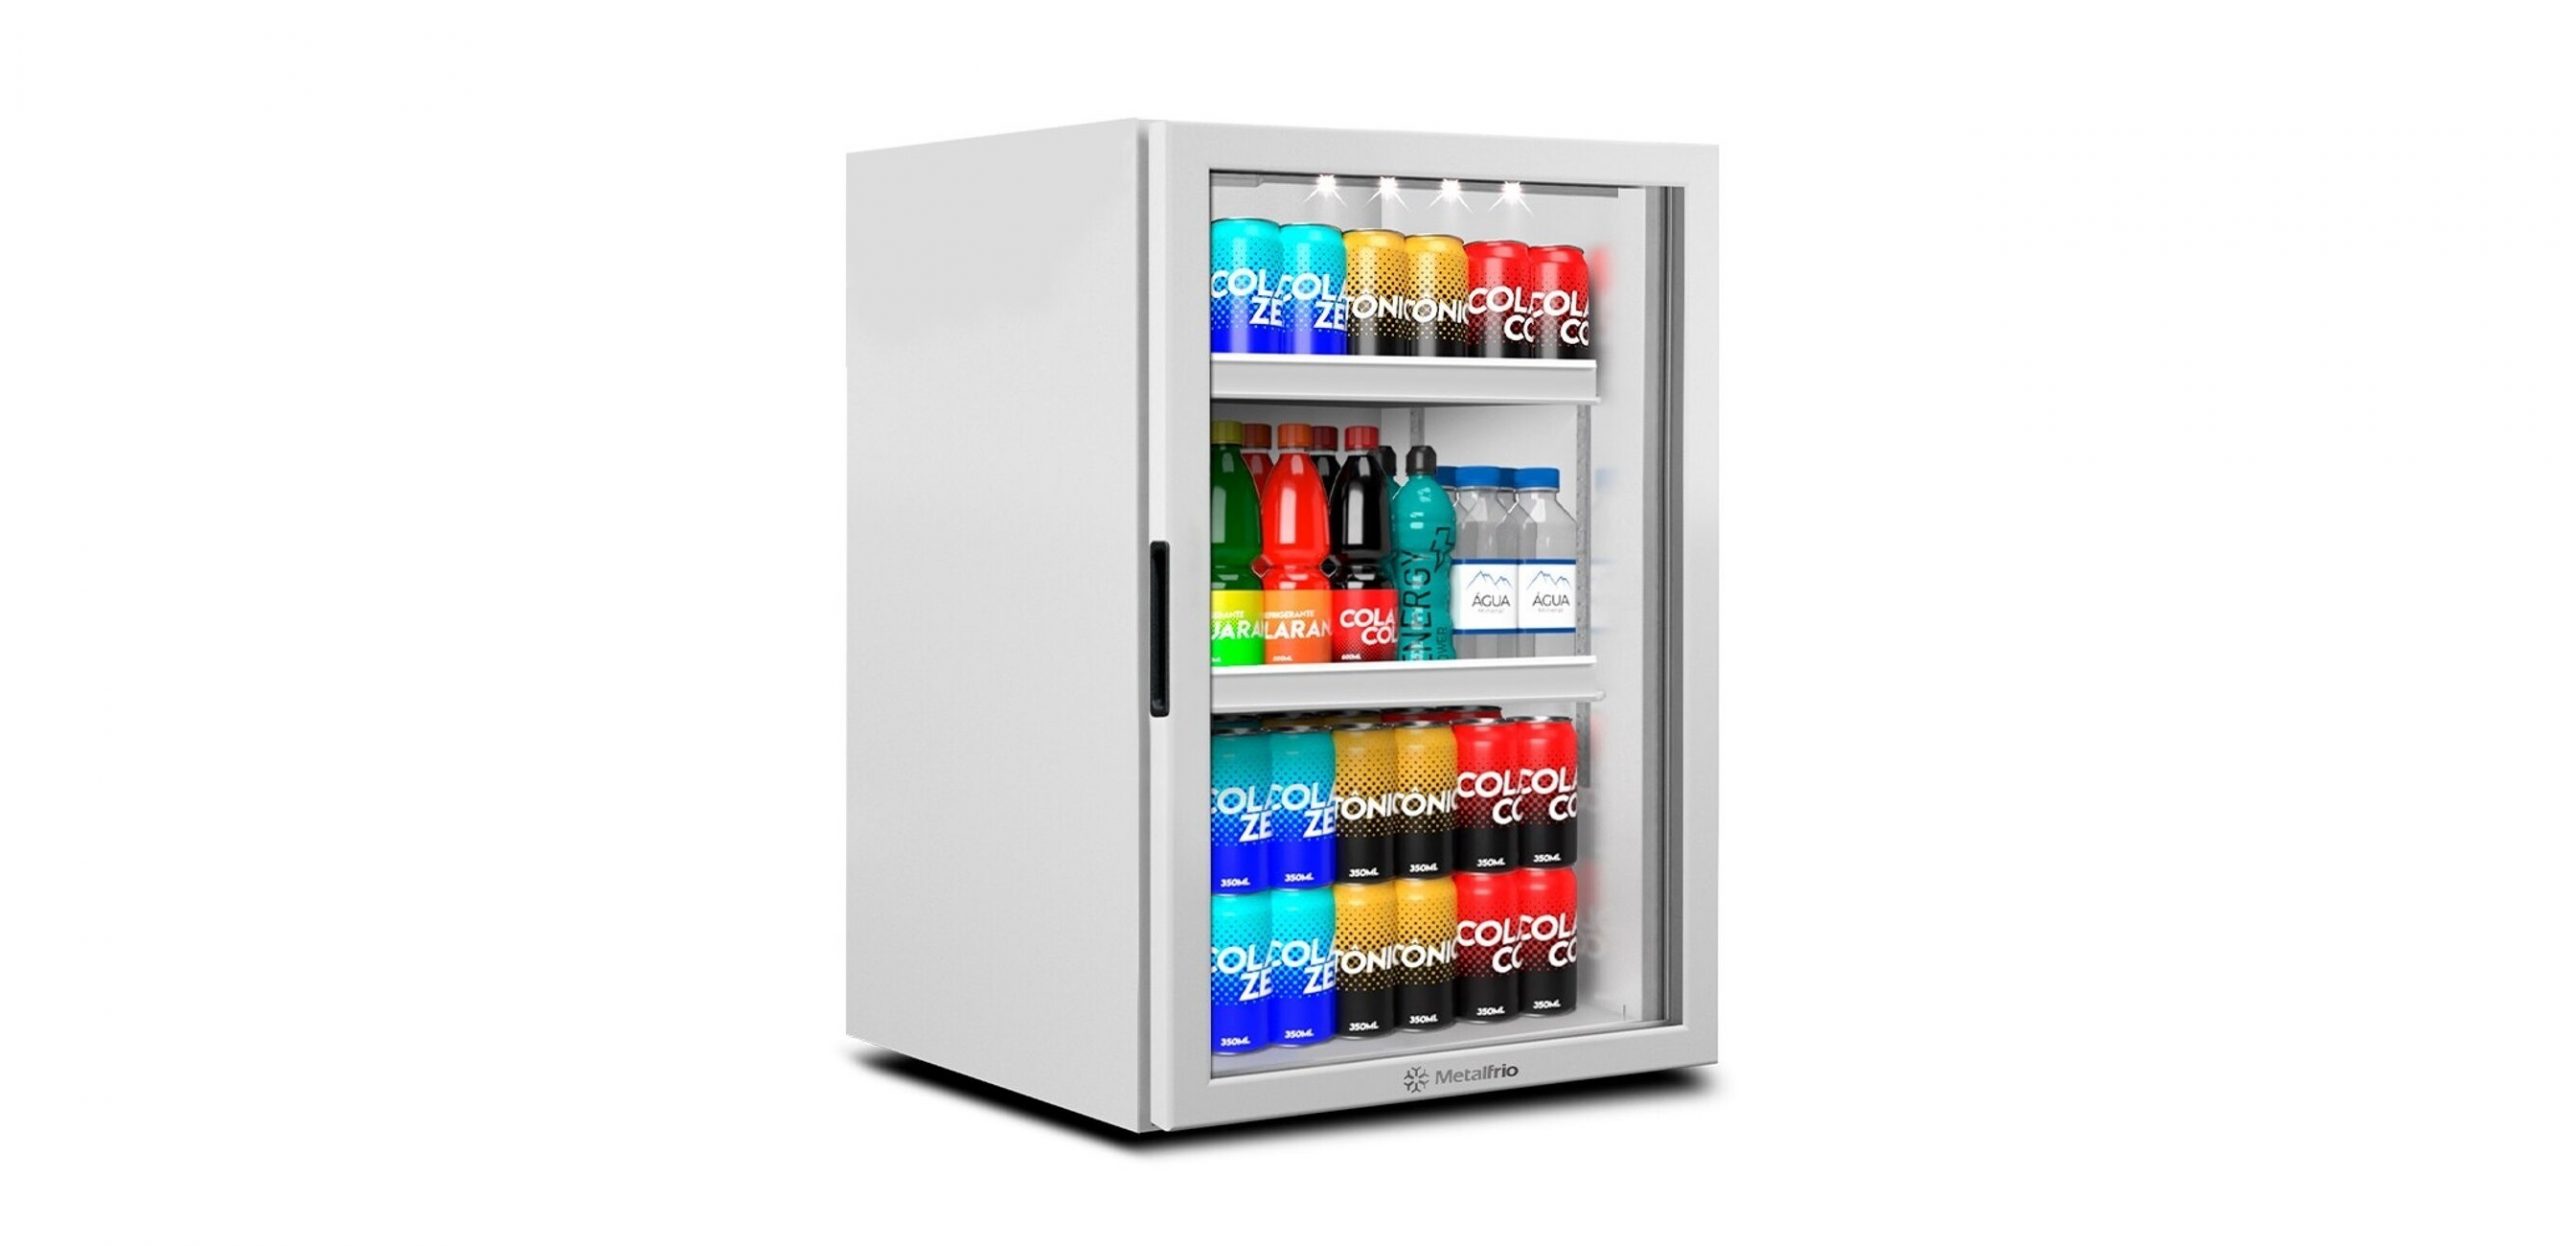 Organização Compacta com o Refrigerador Expositor Metalfrio